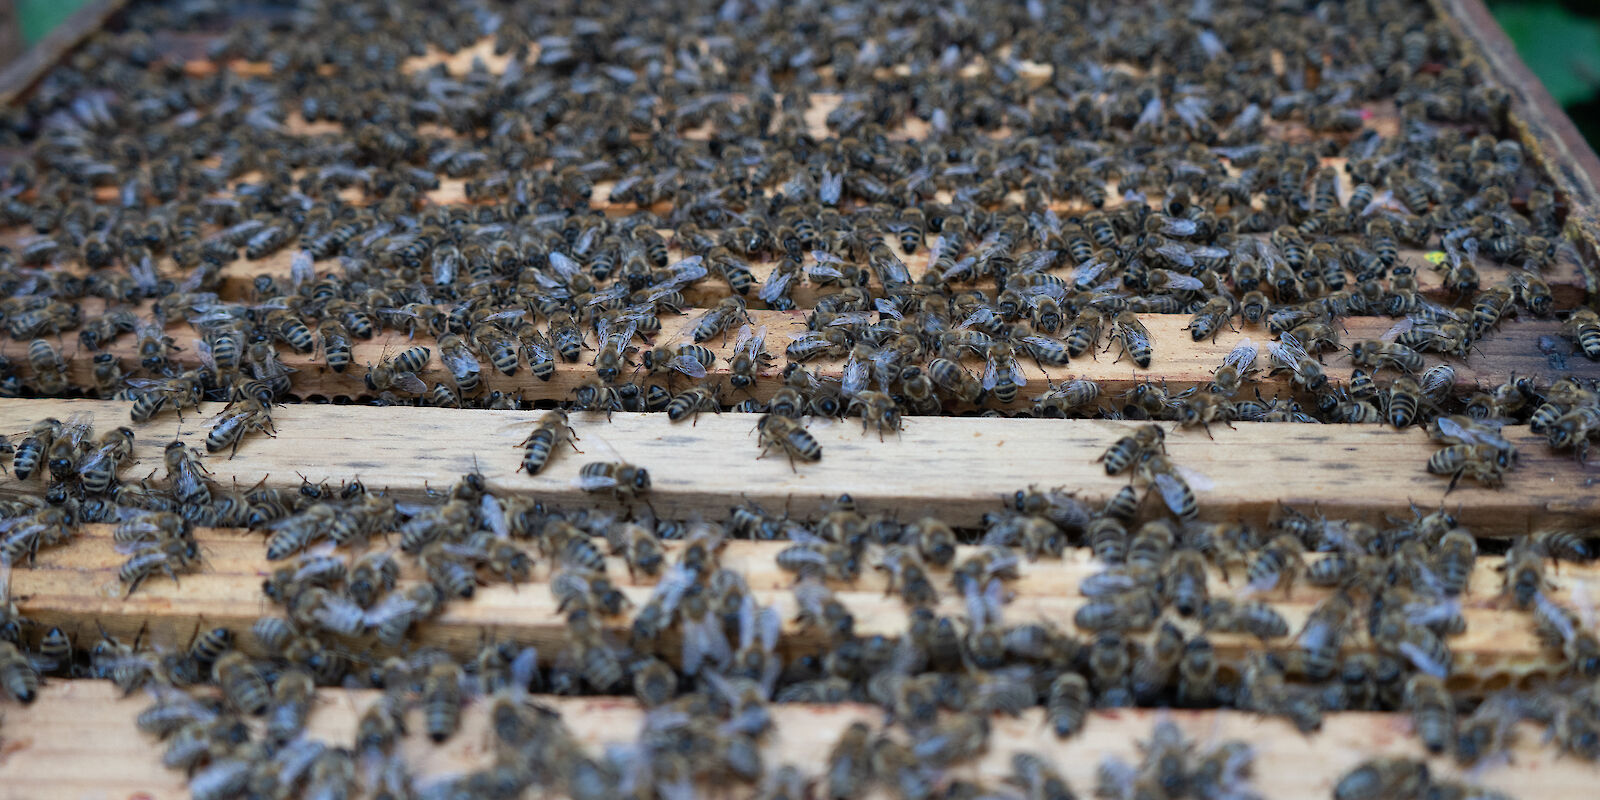 Unsere kleinsten Mitarbeitenden - die Bienen der Maintal Werke